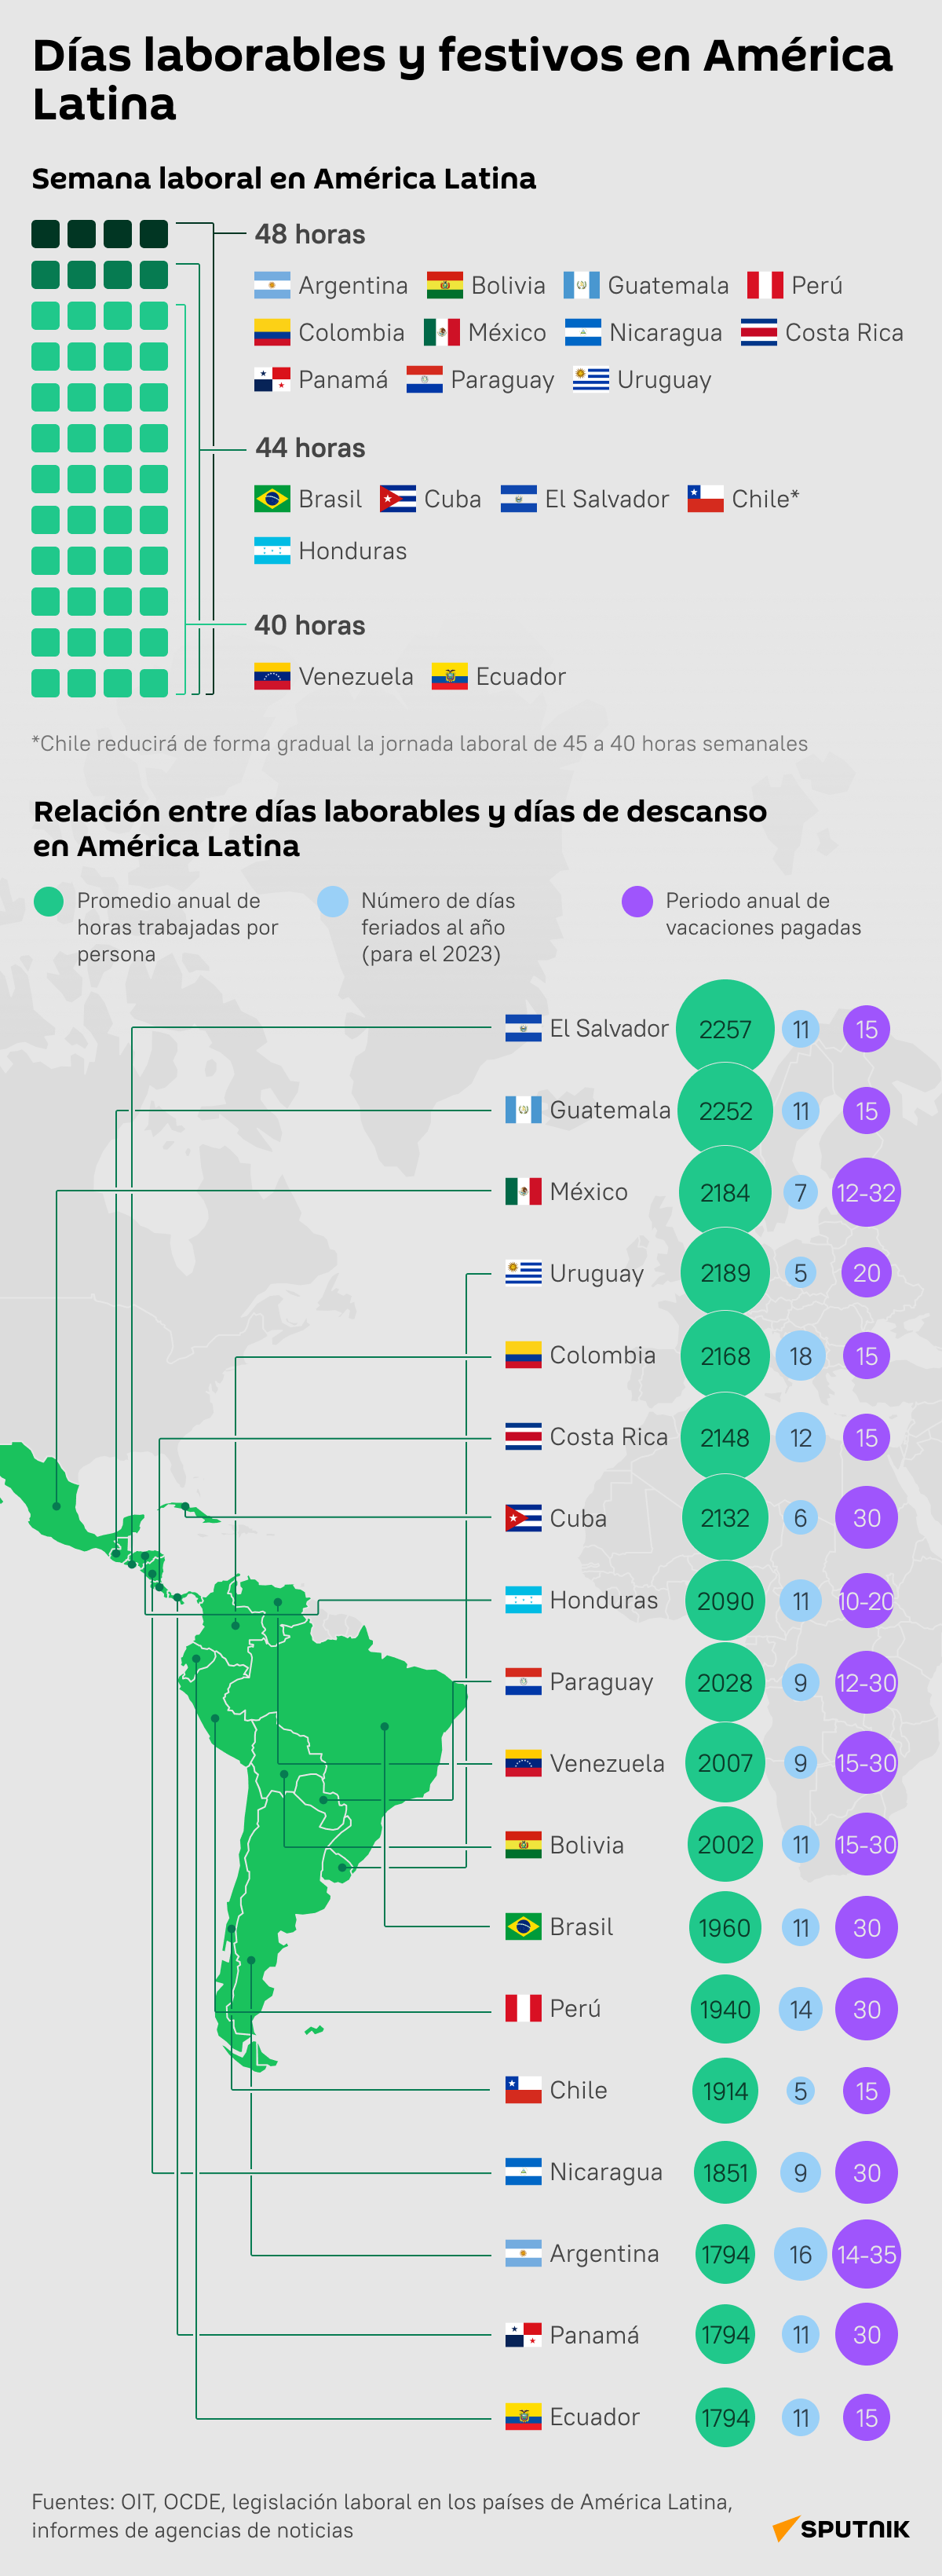 Infografía Días laborables y festivos en América Latina - Sputnik Mundo